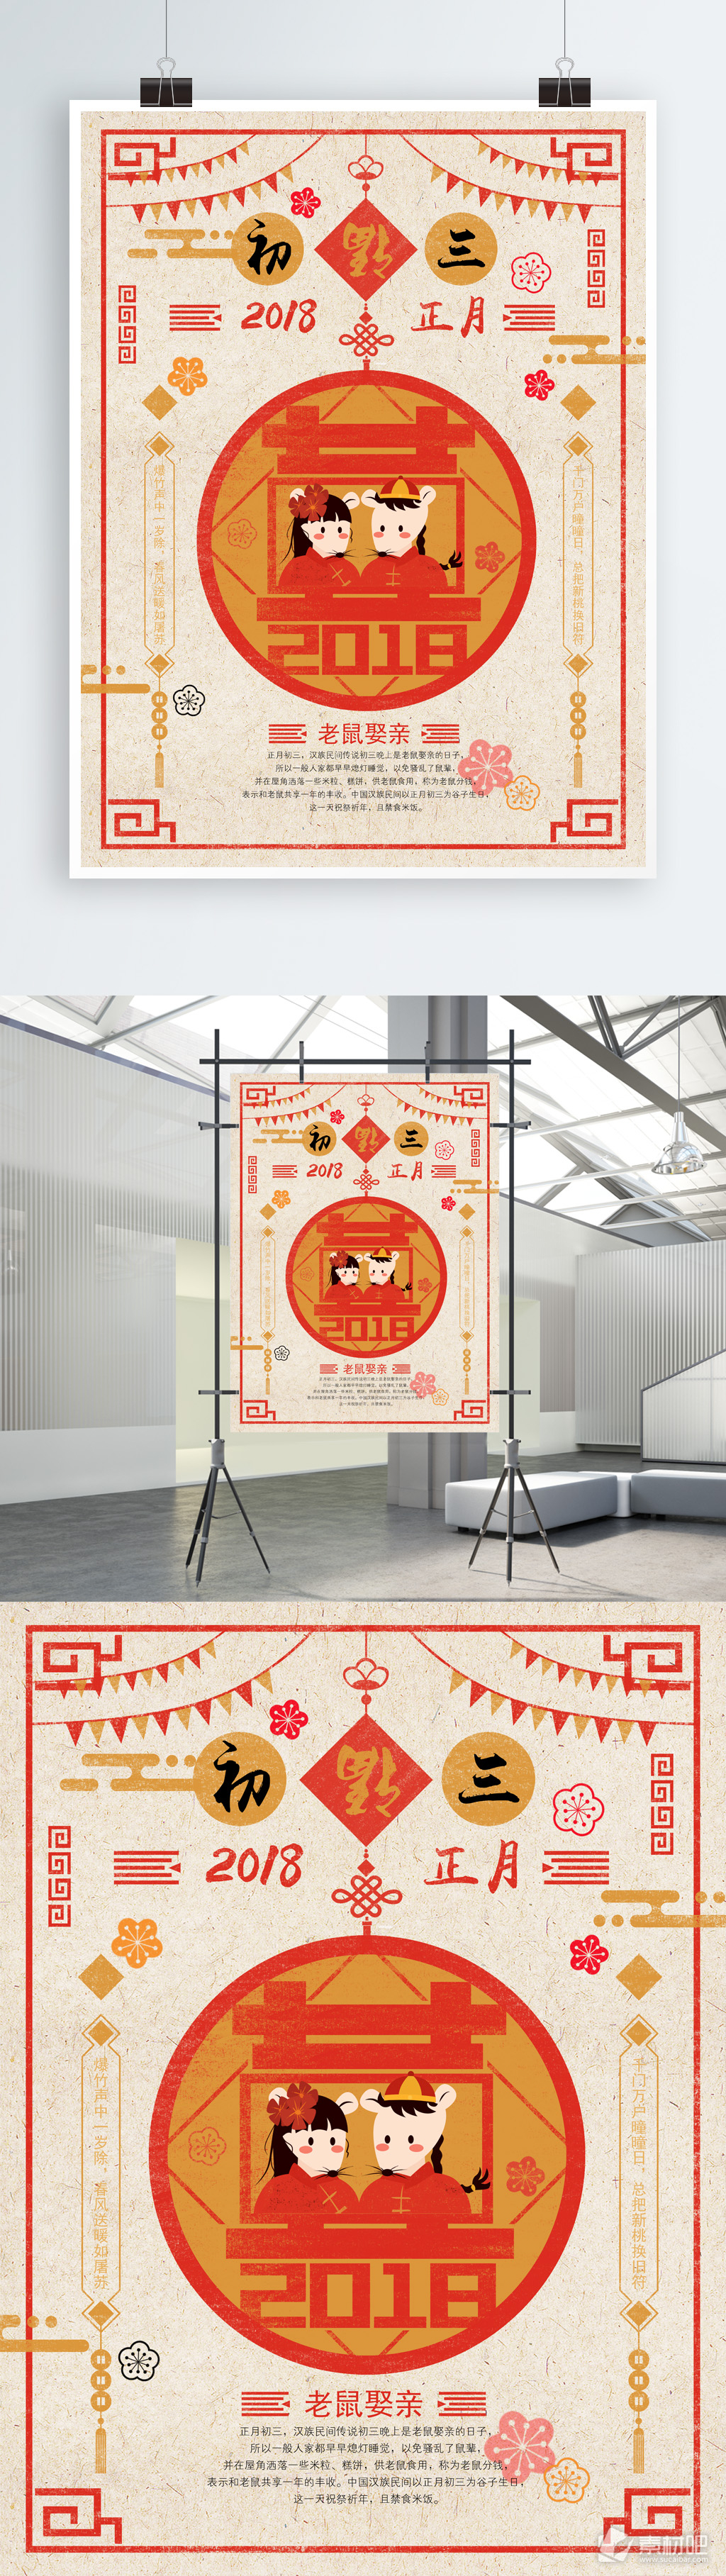 春节正月初三老鼠娶亲原创插画手绘海报